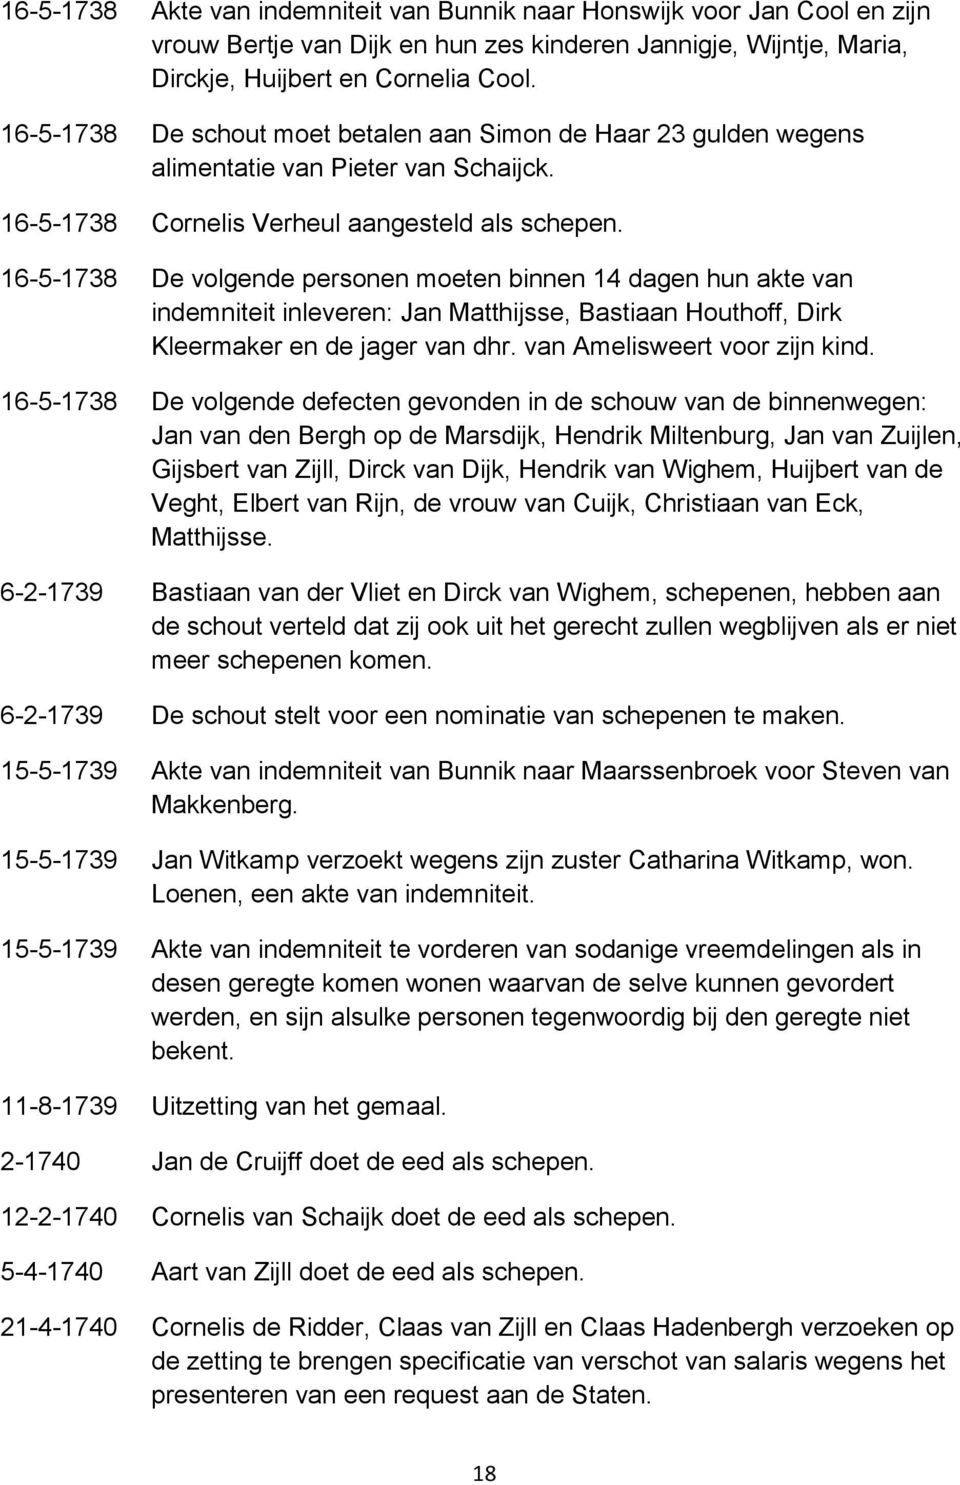 16-5-1738 De volgende personen moeten binnen 14 dagen hun akte van indemniteit inleveren: Jan Matthijsse, Bastiaan Houthoff, Dirk Kleermaker en de jager van dhr. van Amelisweert voor zijn kind.